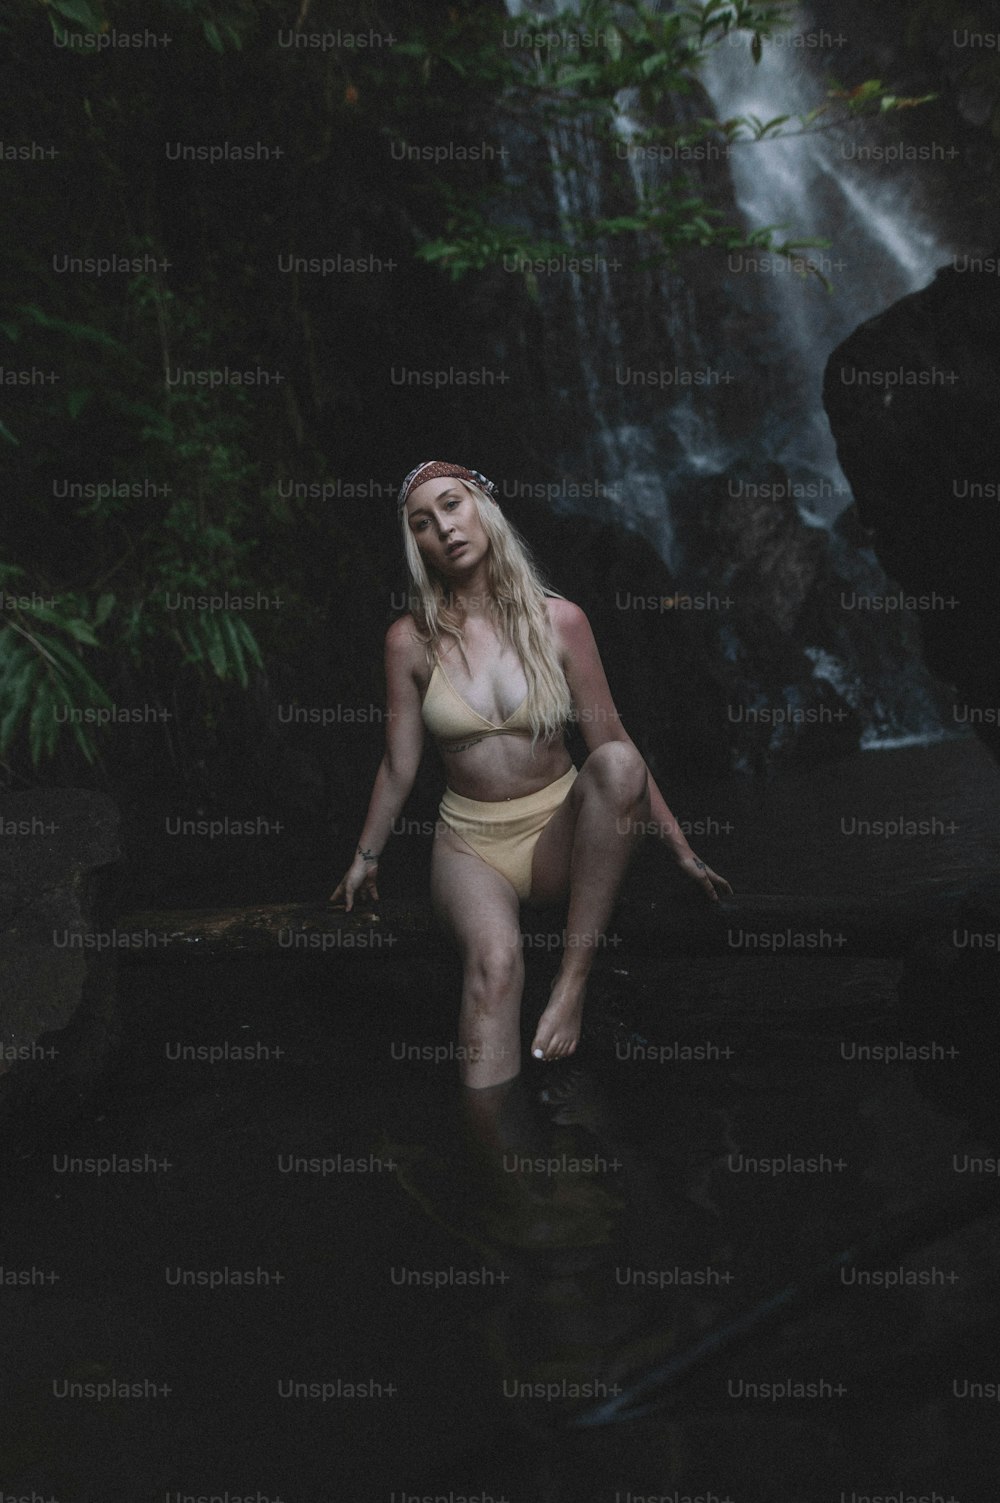 a woman in a bikini standing in the water near a waterfall